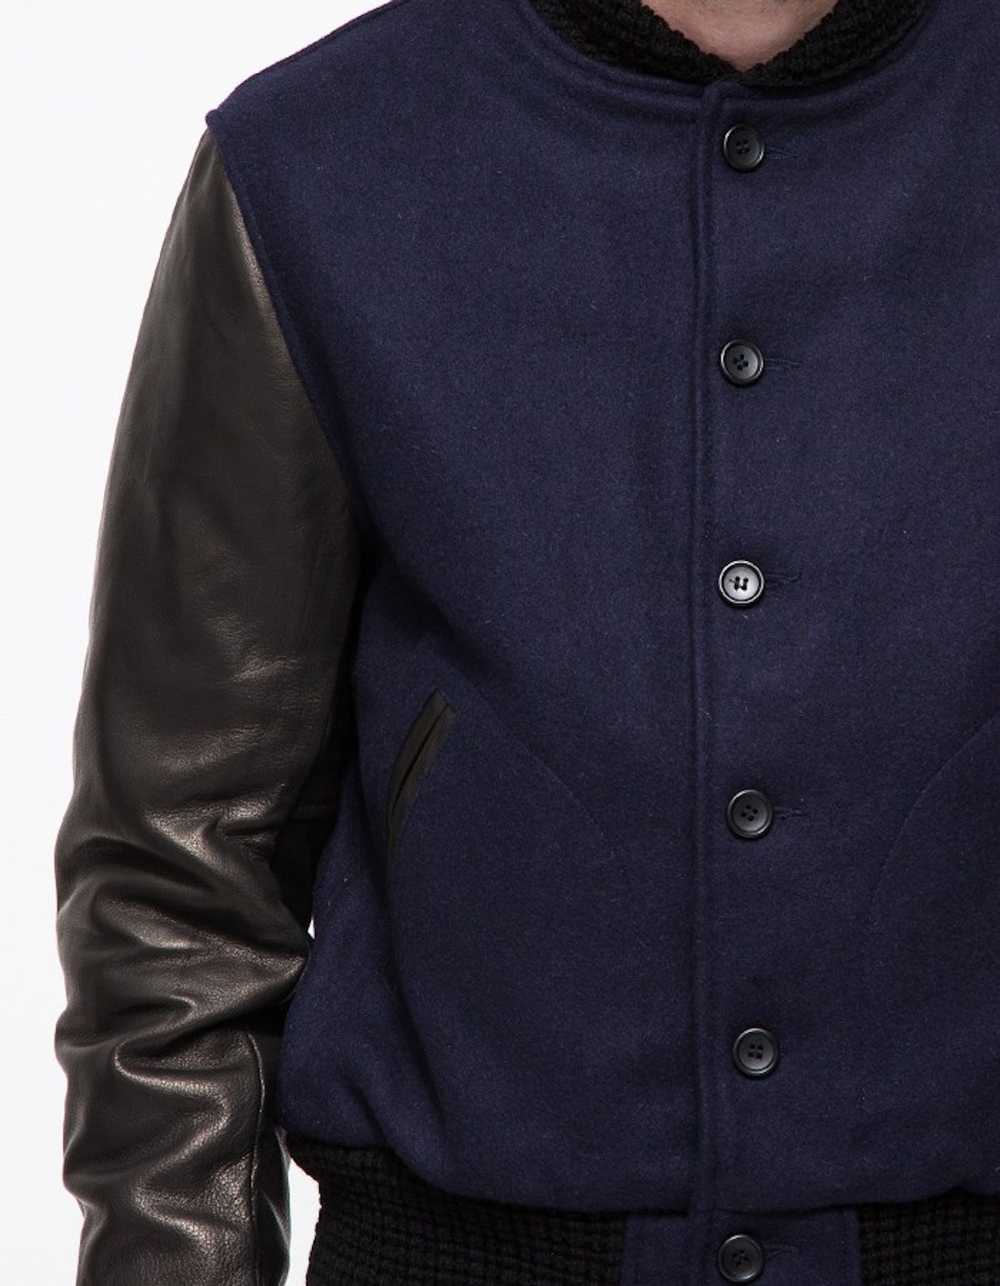 Unis Wool & Leather Varsity Jacket - image 4